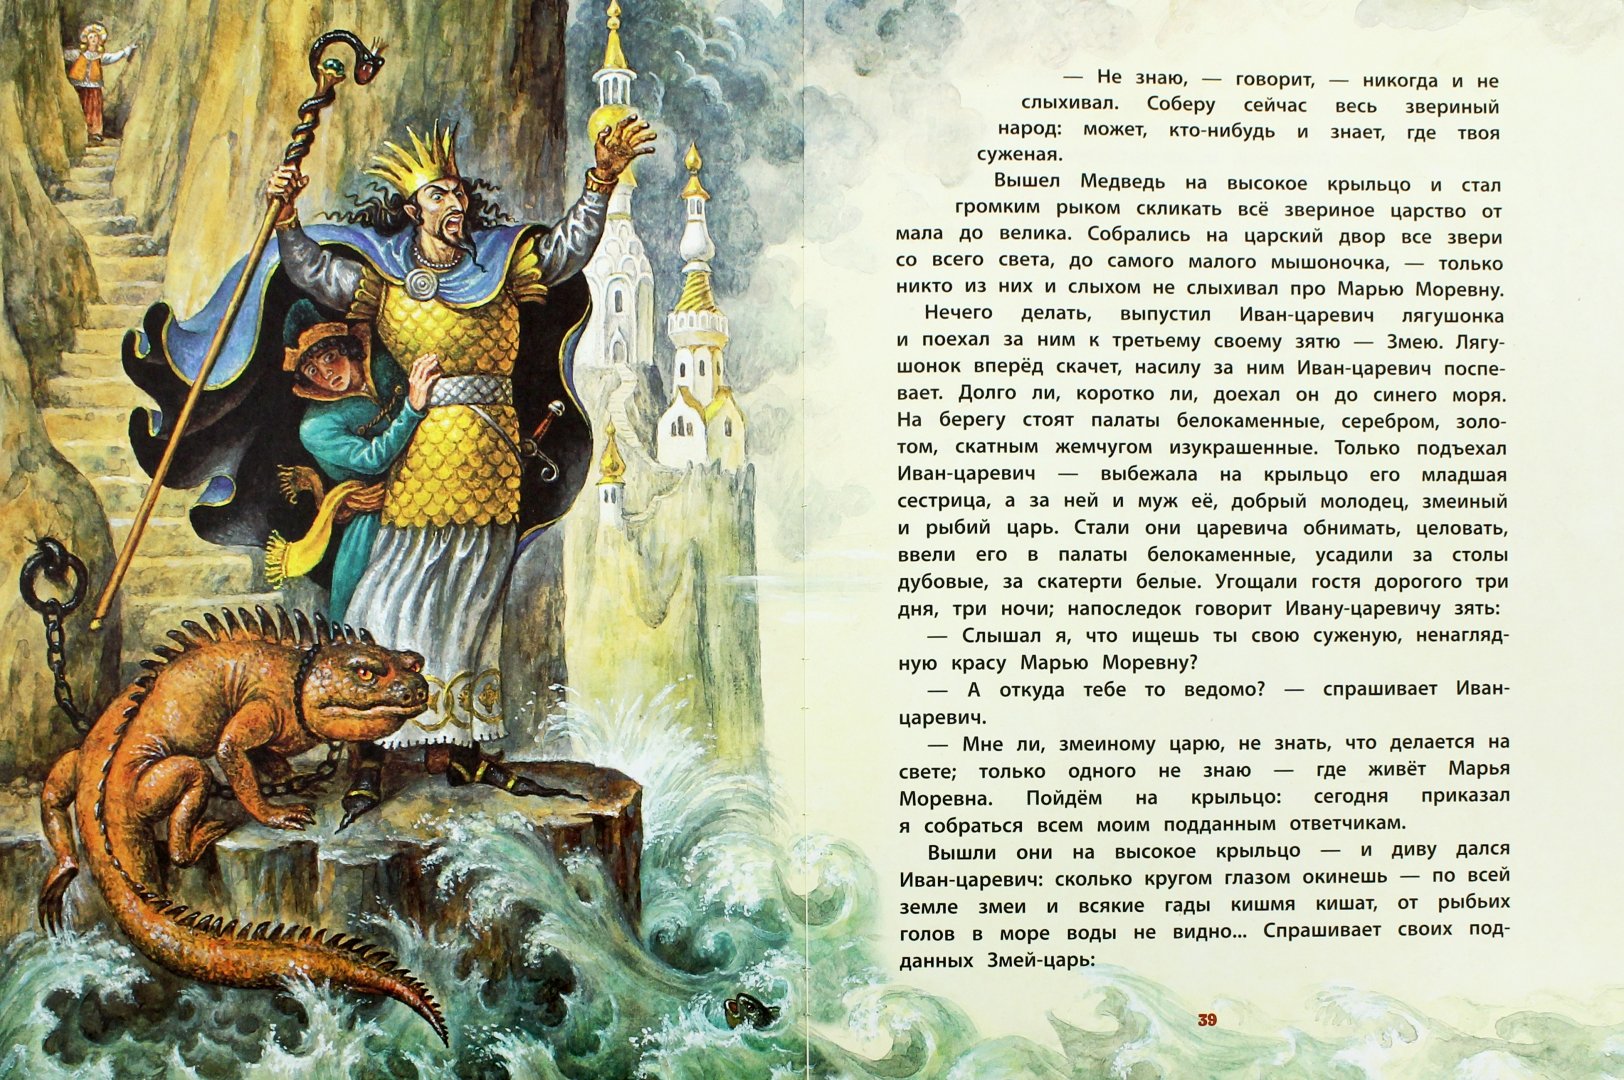 Читать чудесные сказки. Иллюстрации Игоря Егунова.